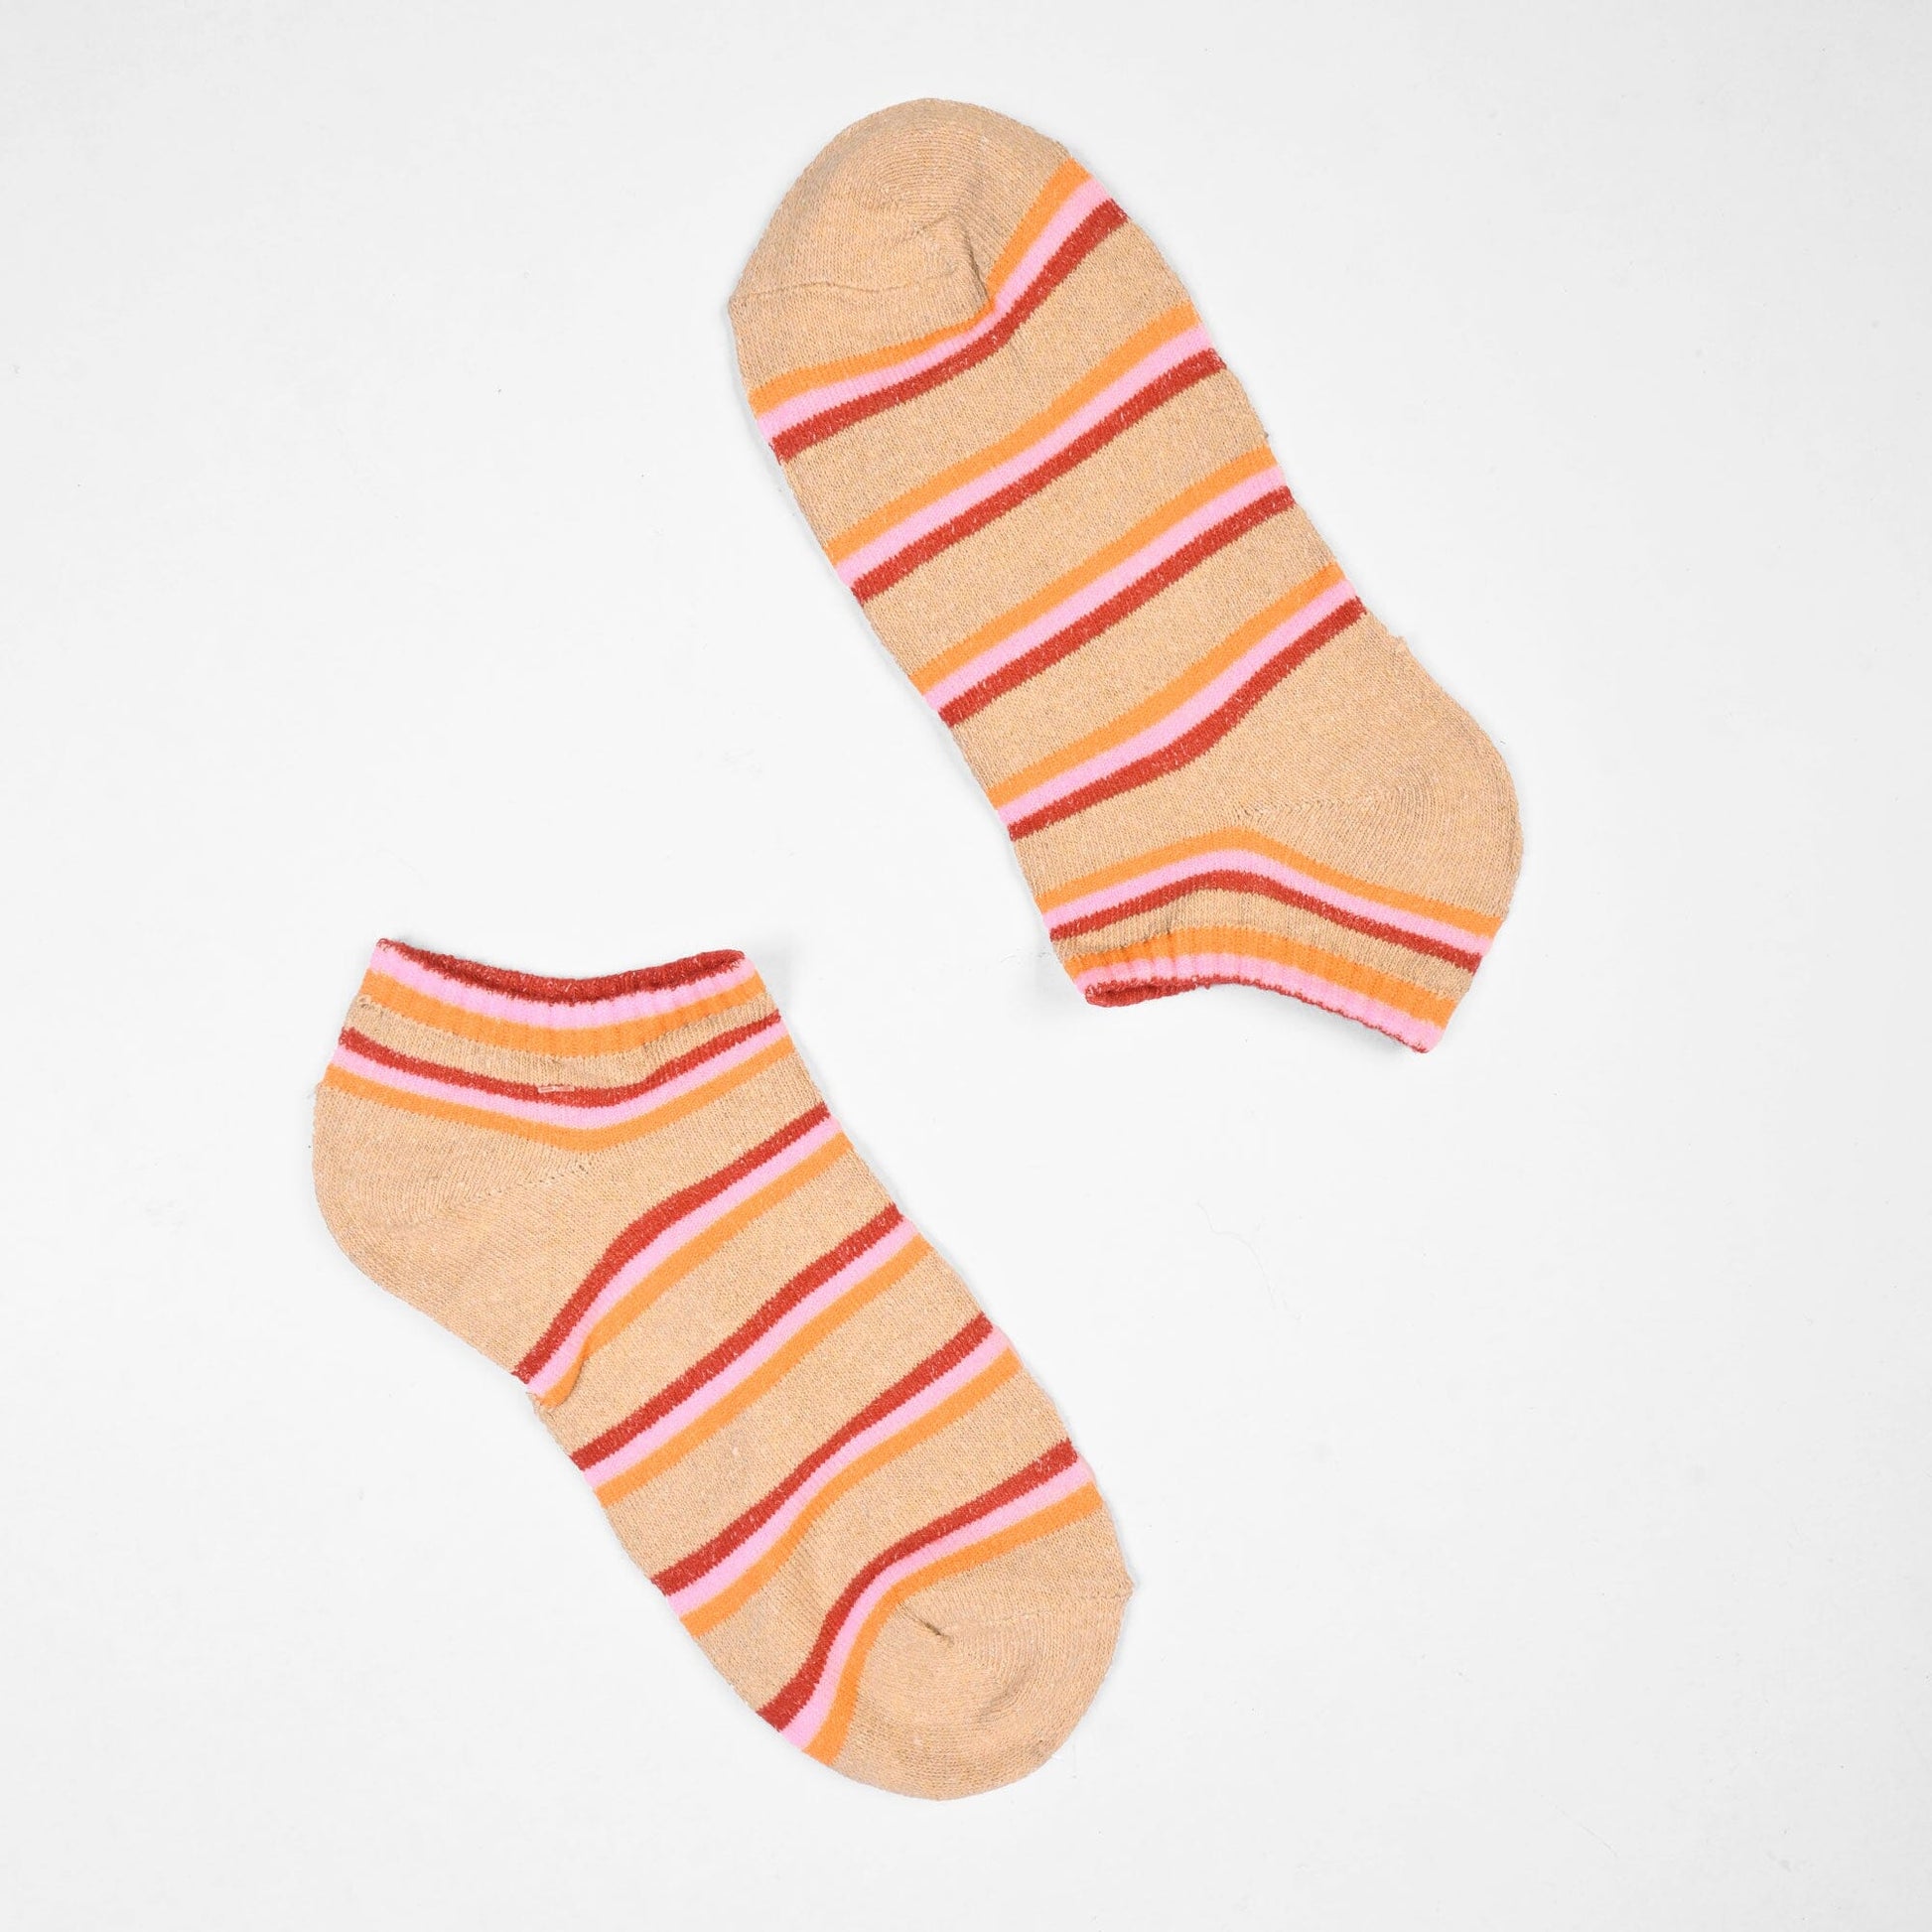 Rauma Women's Classic Anklet Socks Socks SRL Skin D3 EUR 35-40